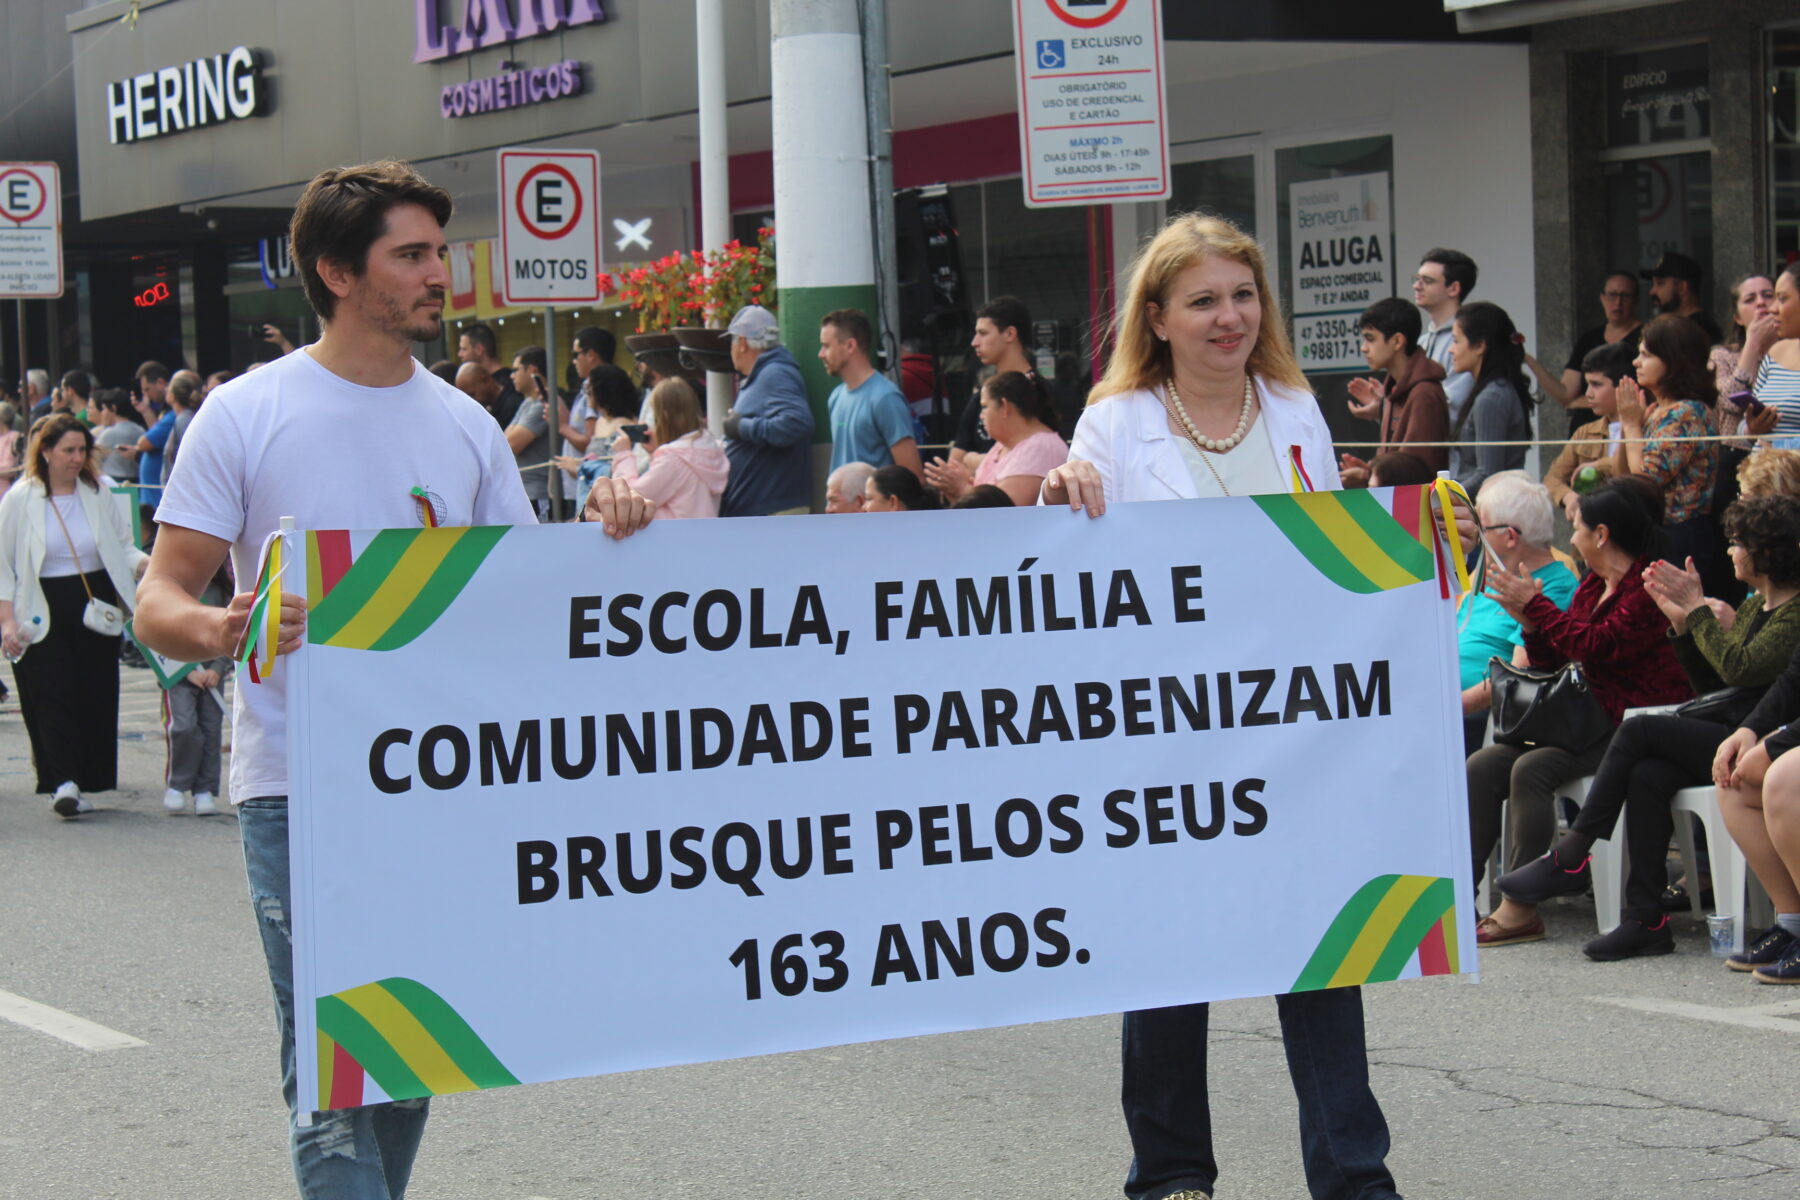 Brusque 163 anos: aproximadamente 3500 pessoas desfilaram na avenida Cônsul Carlos Renaux